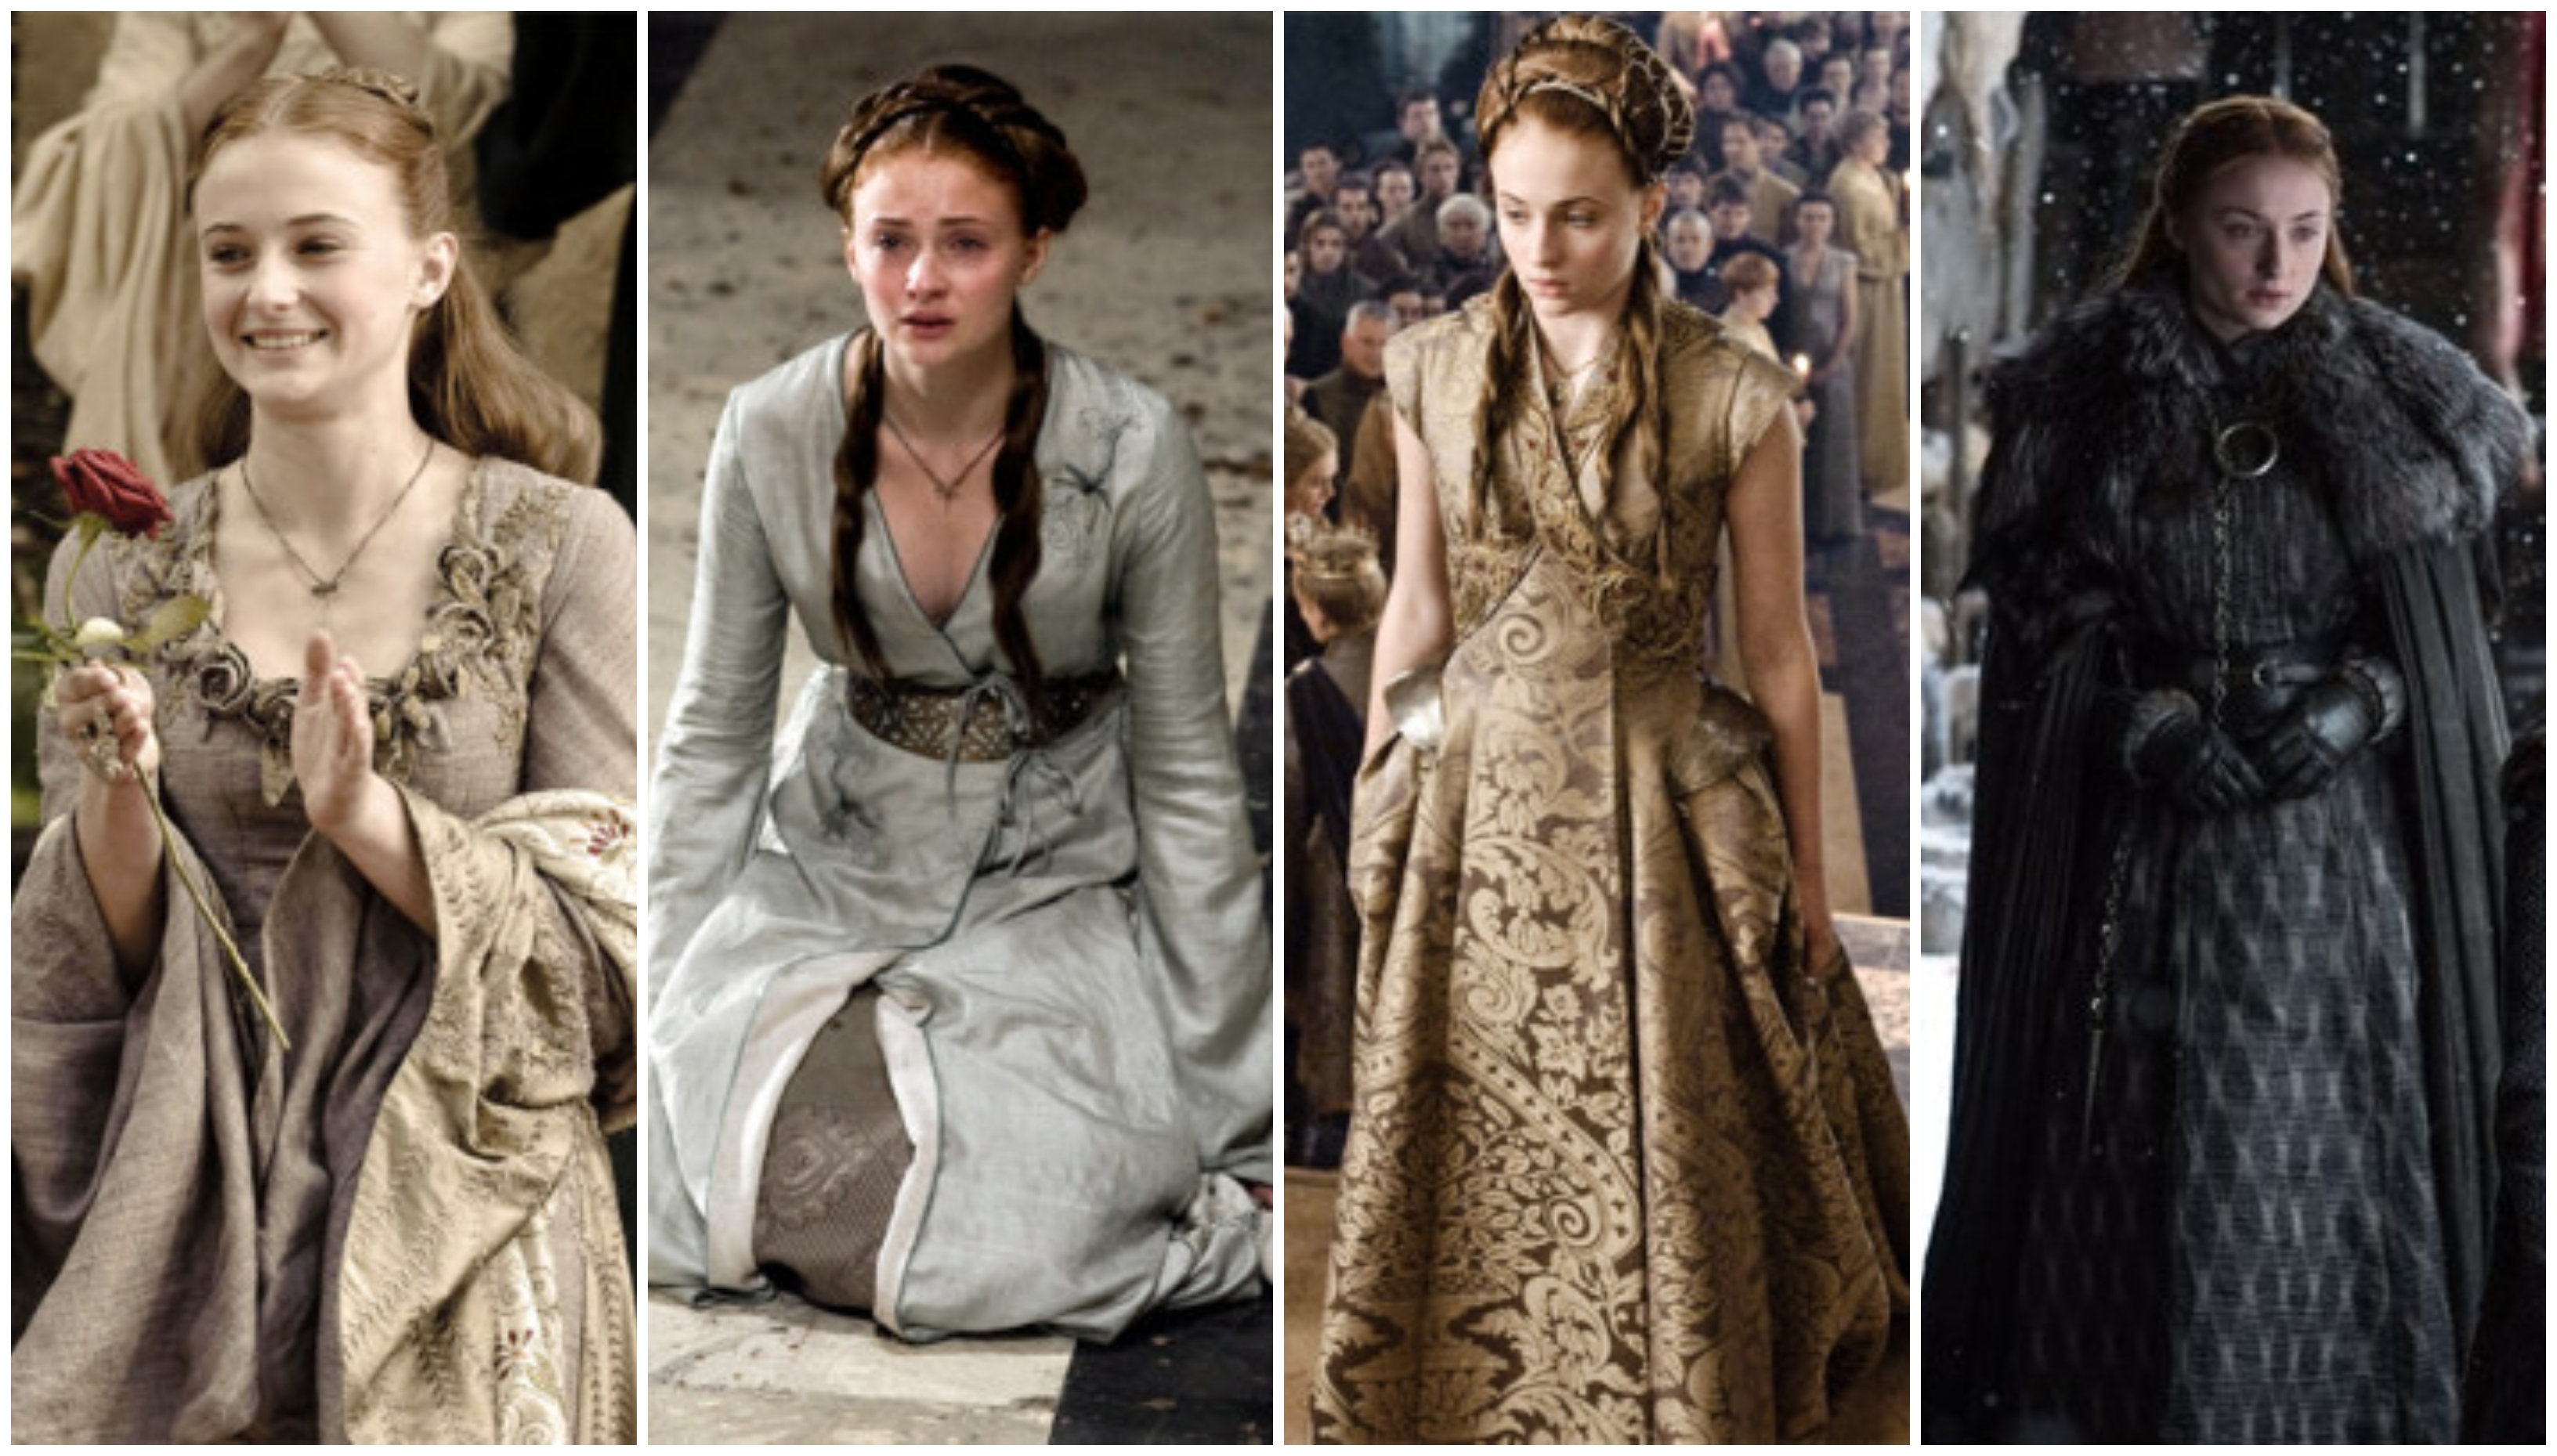 Sansa stílusán látszott leginkább, hogy mindig húzott valakihez a szíve, vagy épp megpróbált valahova beolvadni. Könnyű dolga volt, mert ő volt az egyetlen karakter, aki szívesen készítette a ruháit és hímzett is.